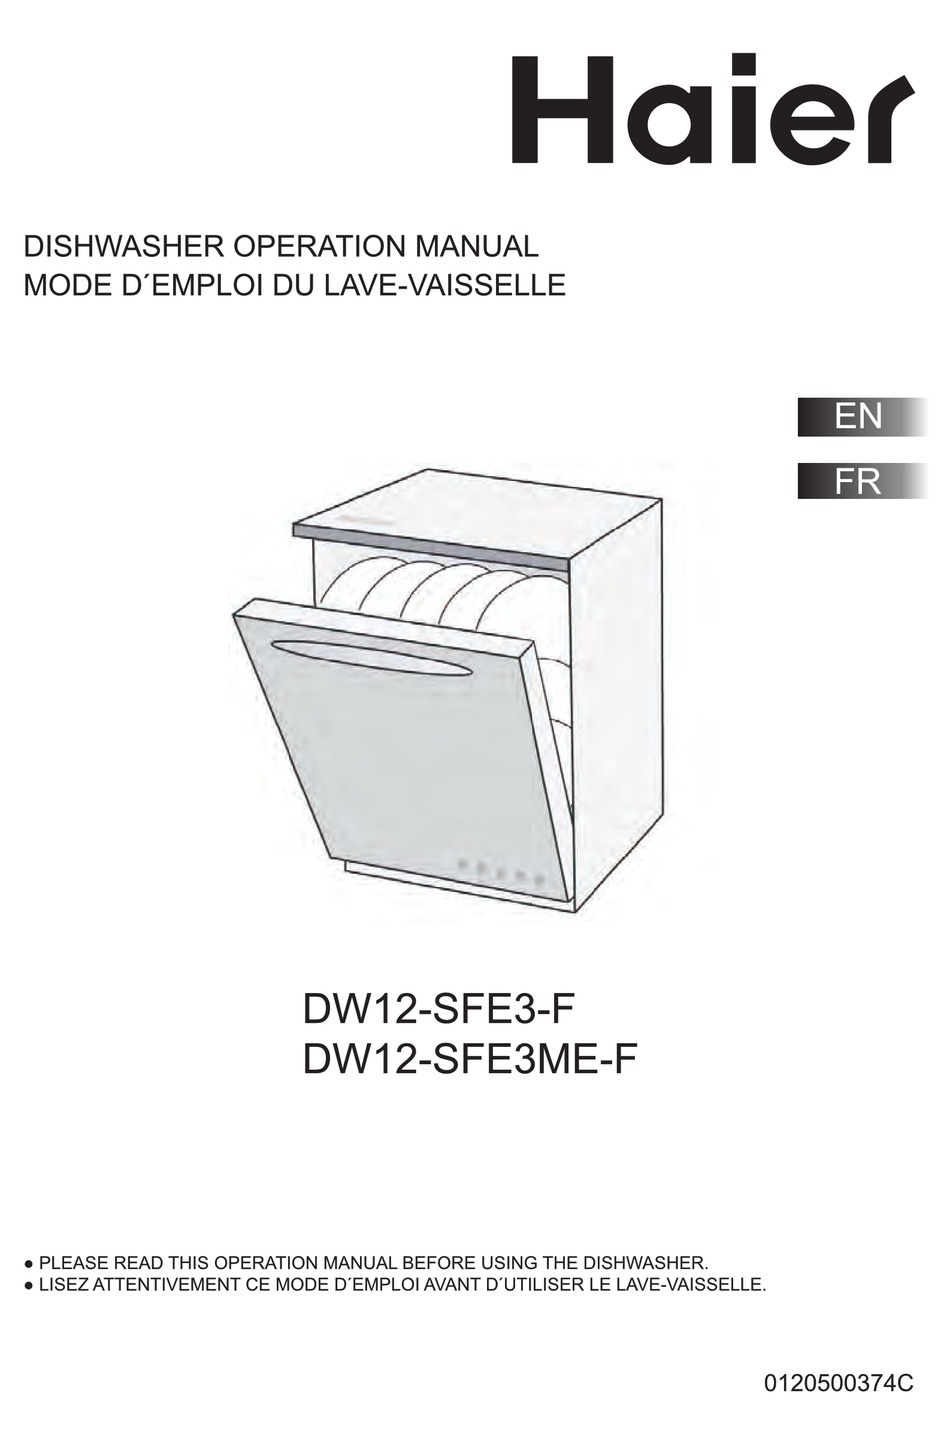 Dishwasher DW12-SFE3-F